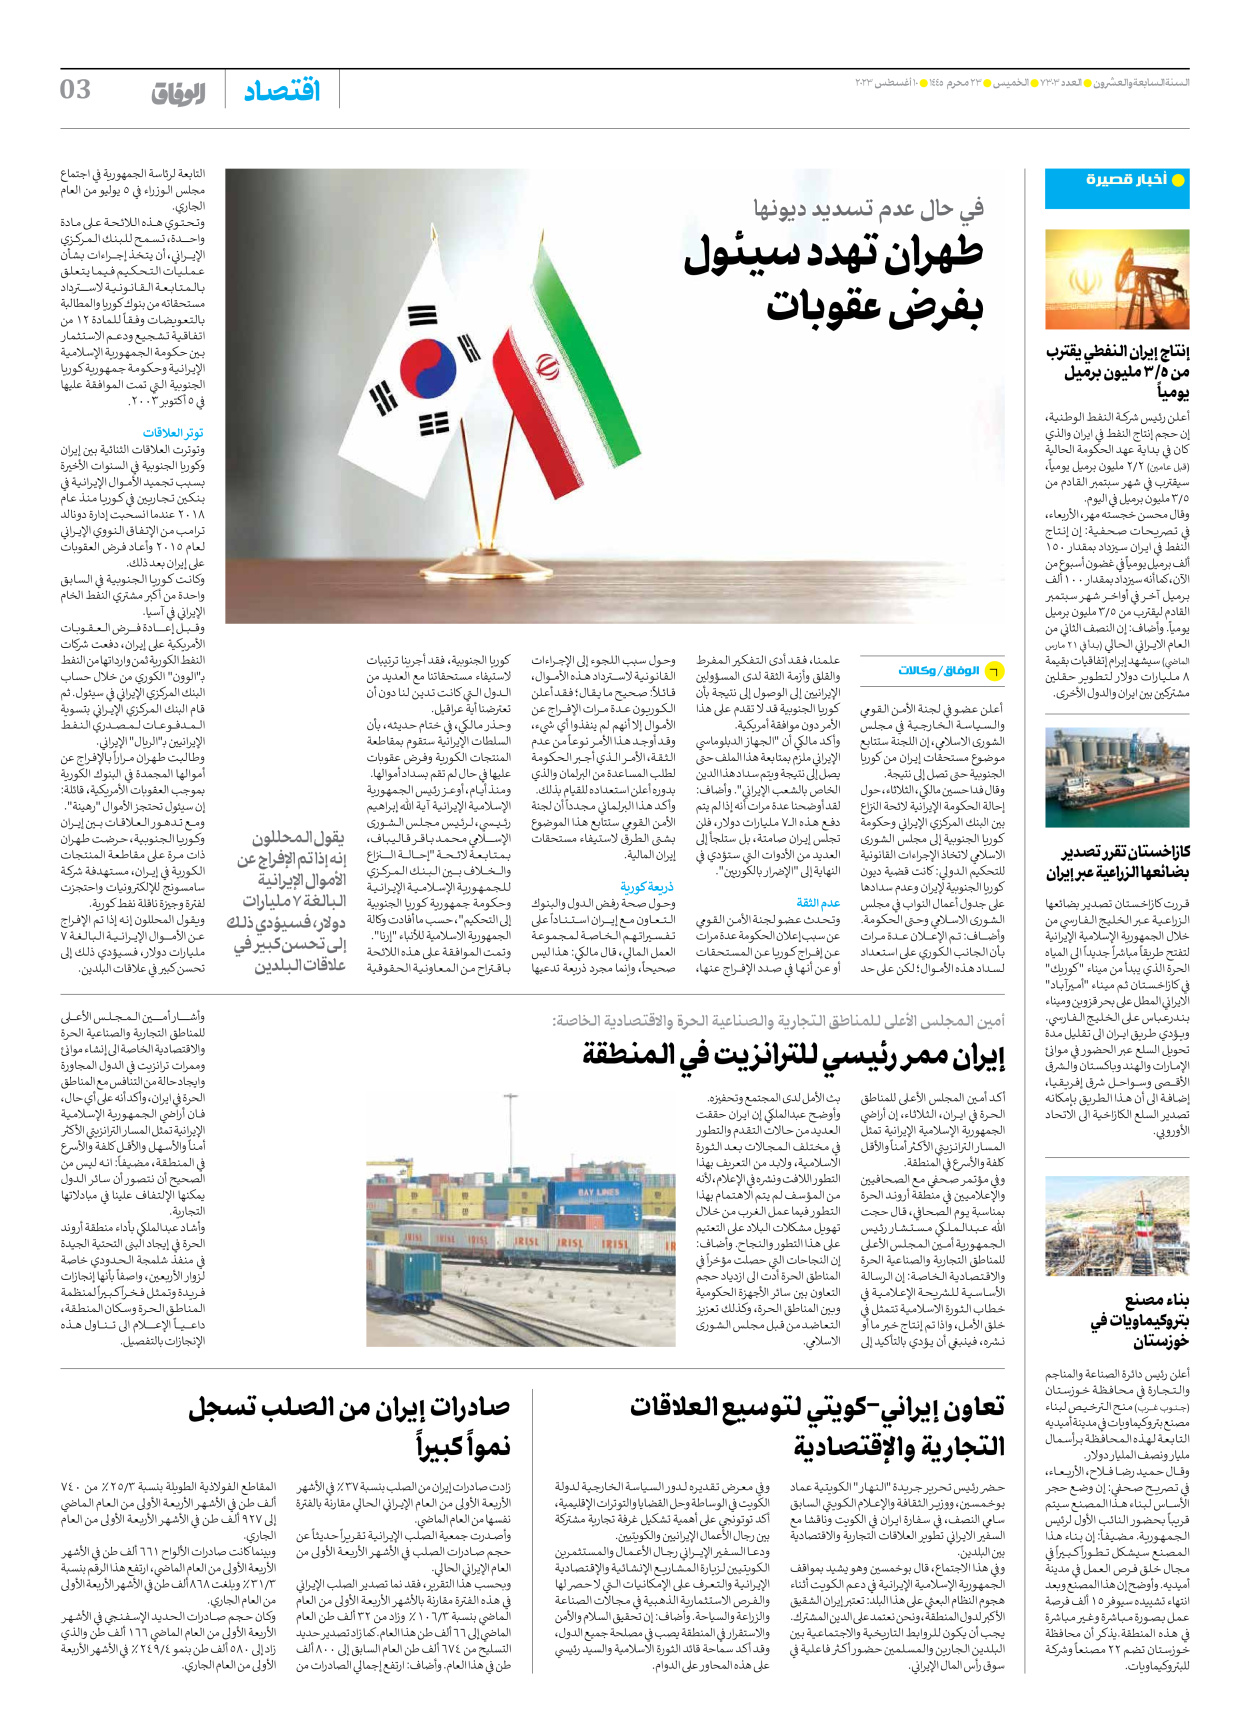 صحیفة ایران الدولیة الوفاق - العدد سبعة آلاف وثلاثمائة وثلاثة - ١٠ أغسطس ٢٠٢٣ - الصفحة ۳